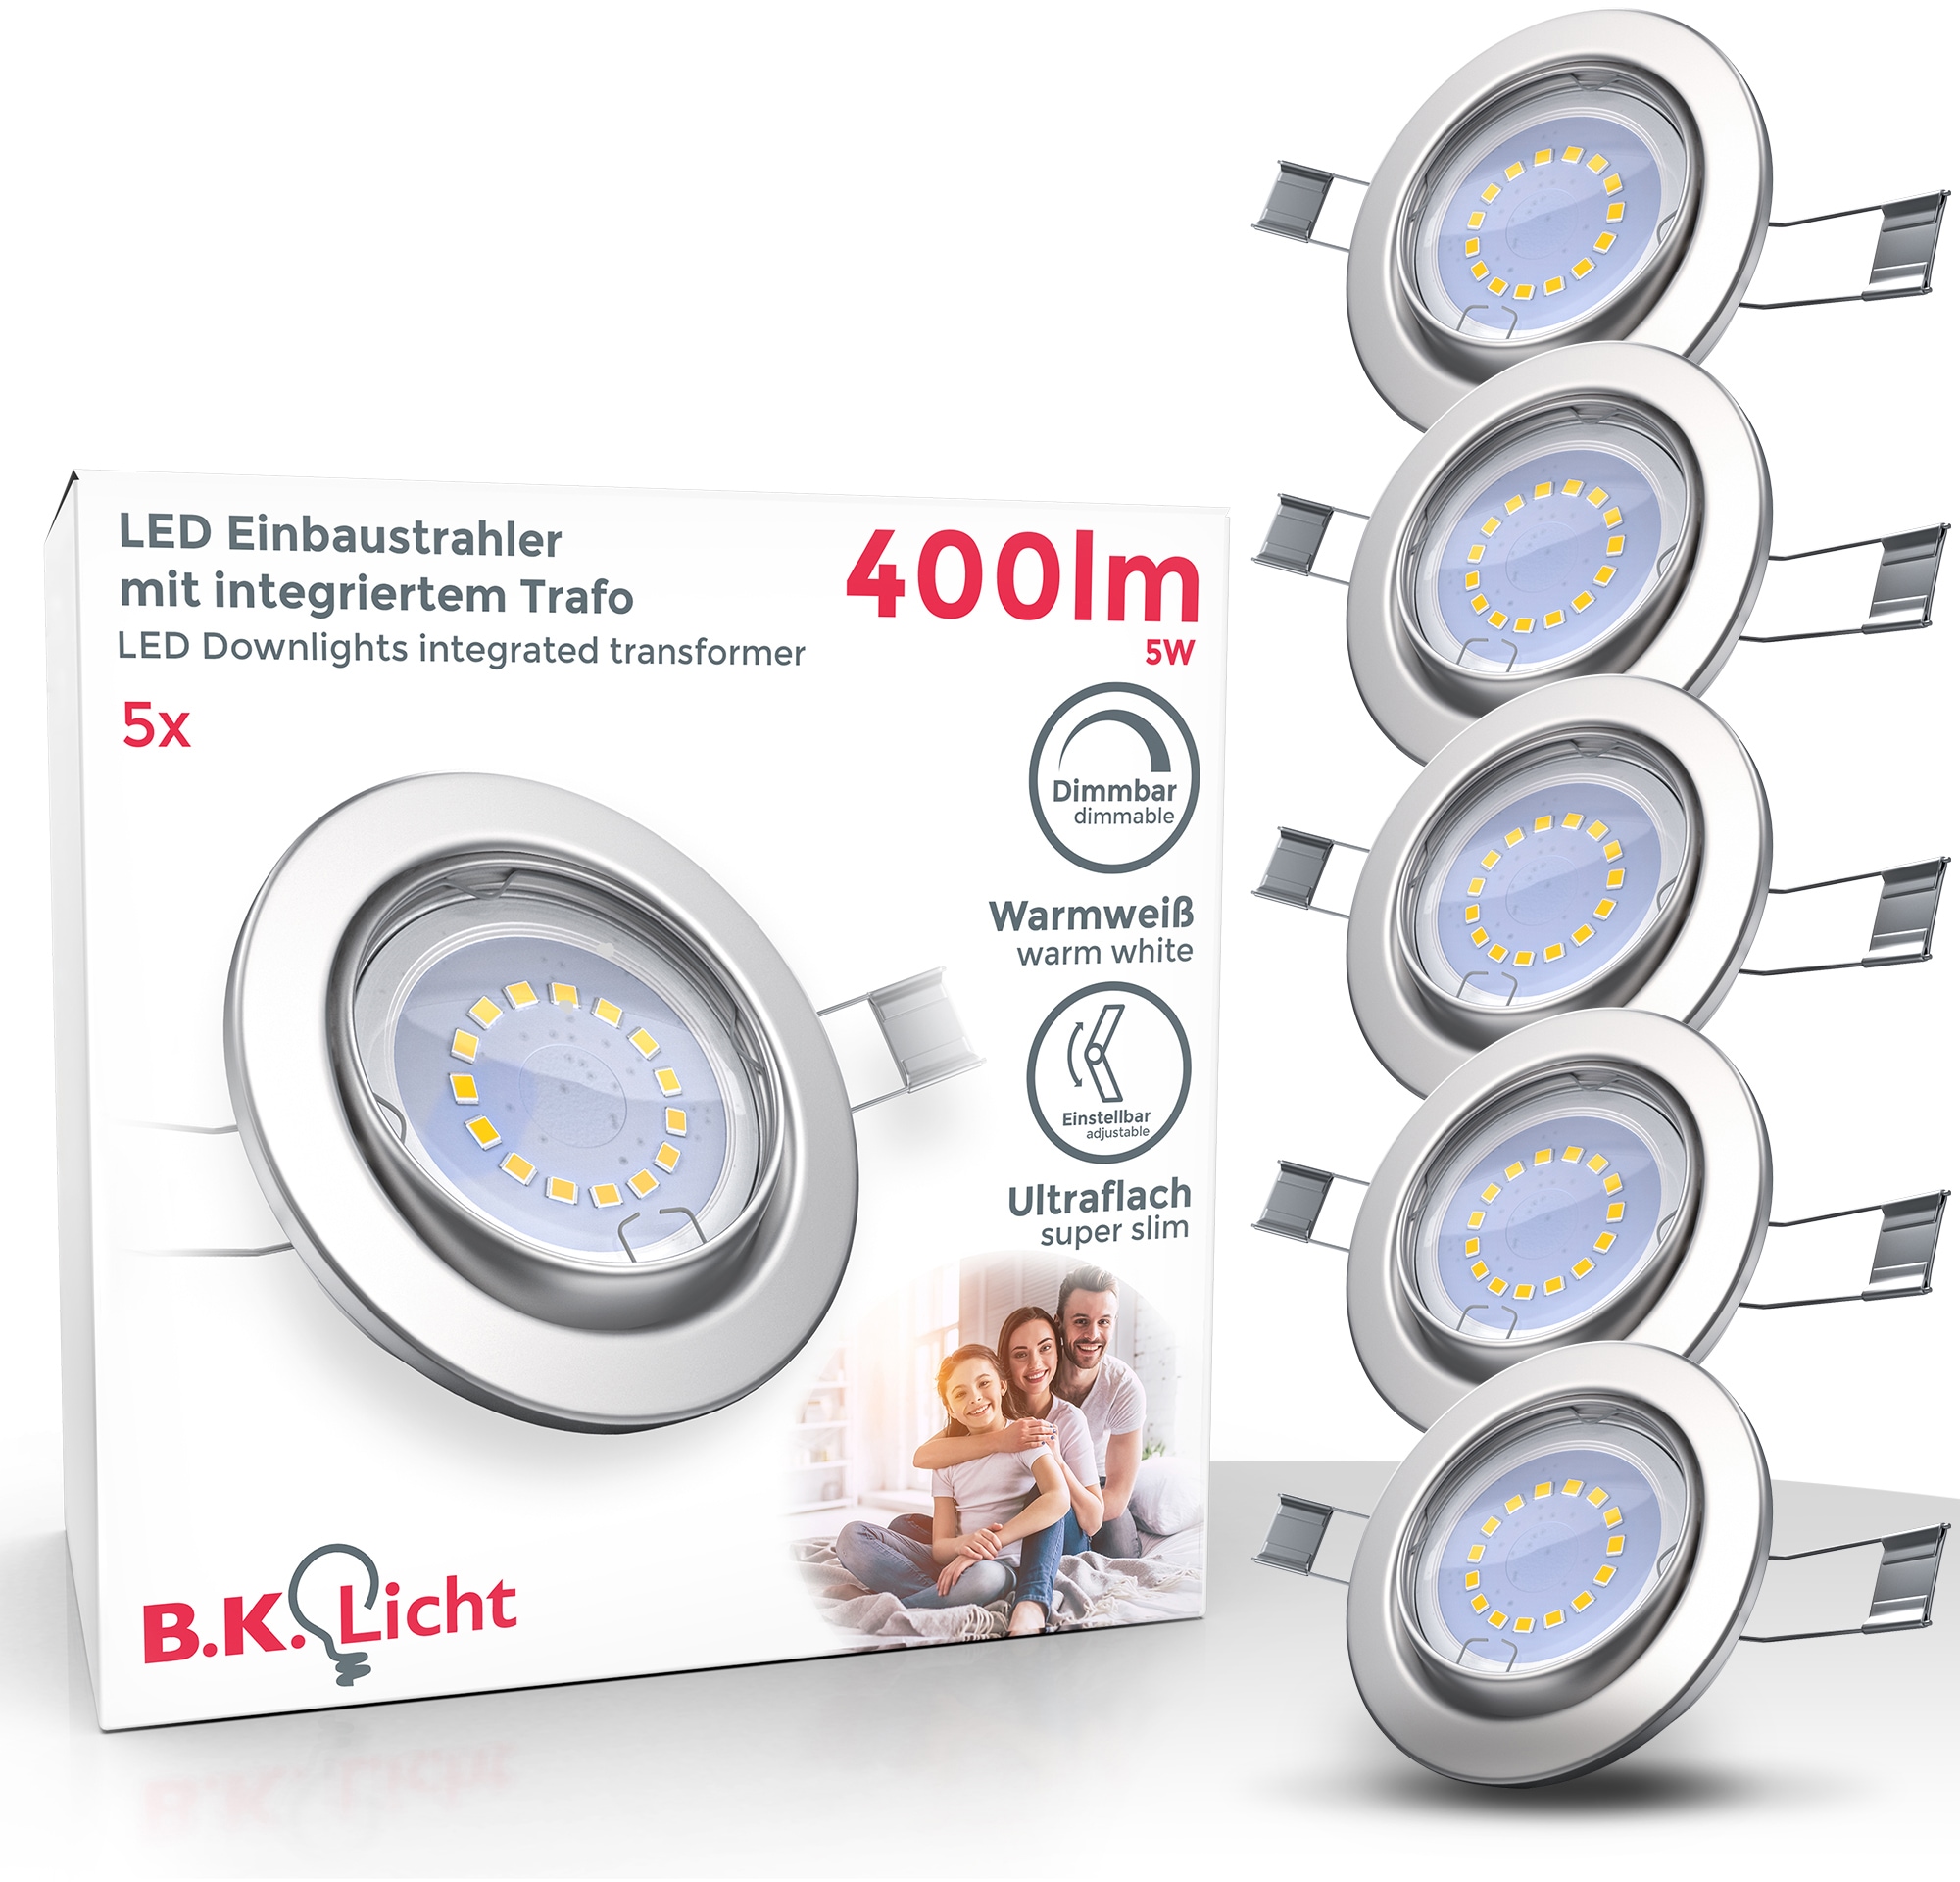 B.K.Licht LED Einbauleuchte, GU10, 5 St., Warmweiß, LED Einbaustrahler dimmbar ohne Dimmer GU10 Decken-Spot inkl. 5W 400lm 5er SET